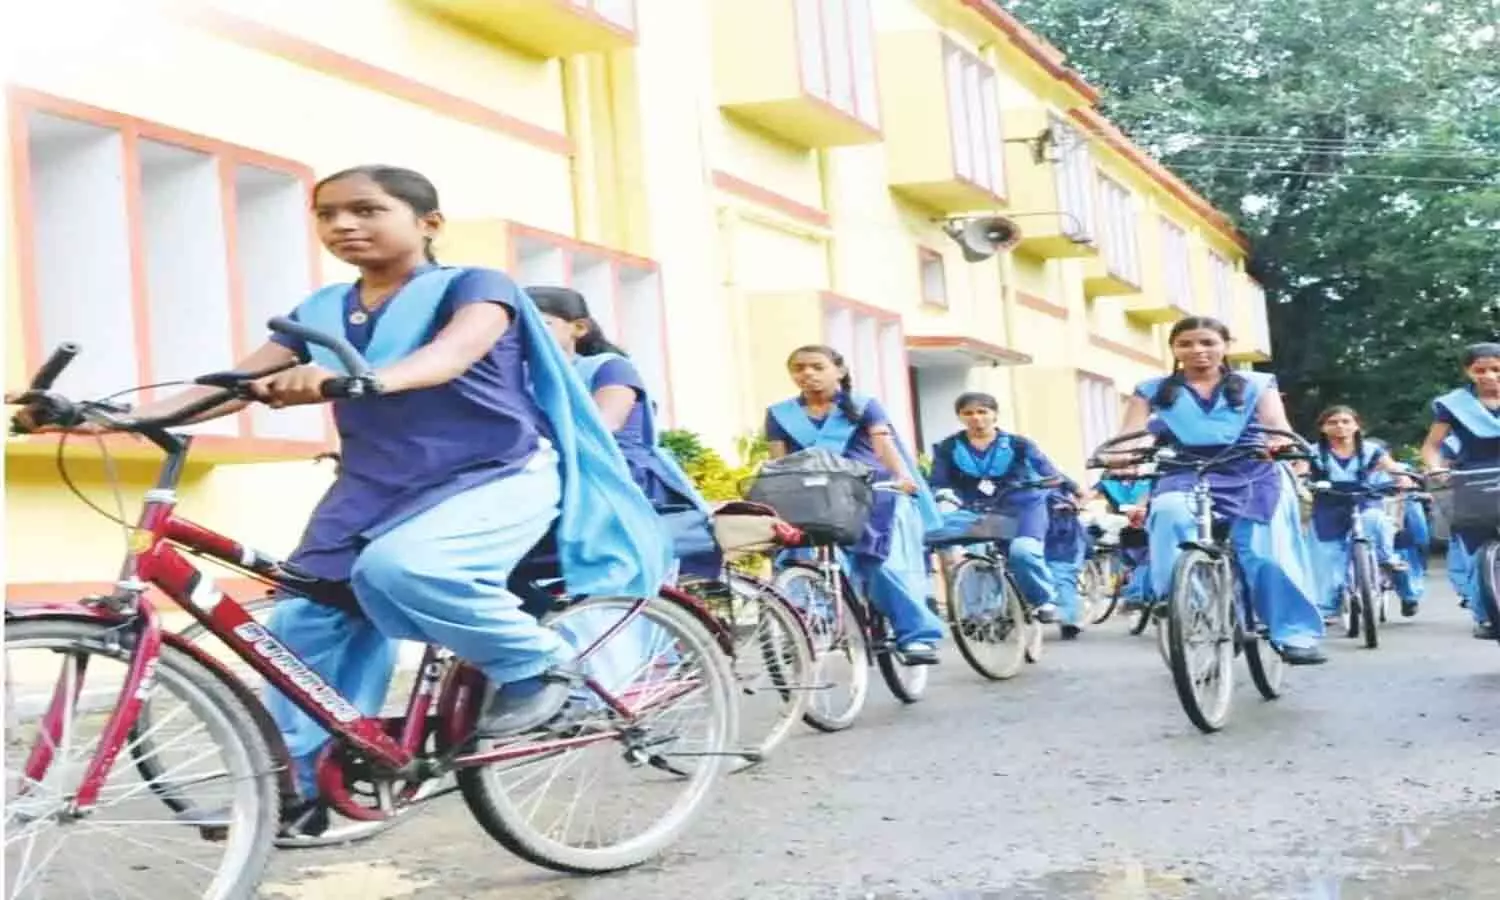 रीवा जिले के 17 हजार विद्यार्थी होंगे लाभान्वित, खाते में आएगी साइकिल खरीदी की राशि